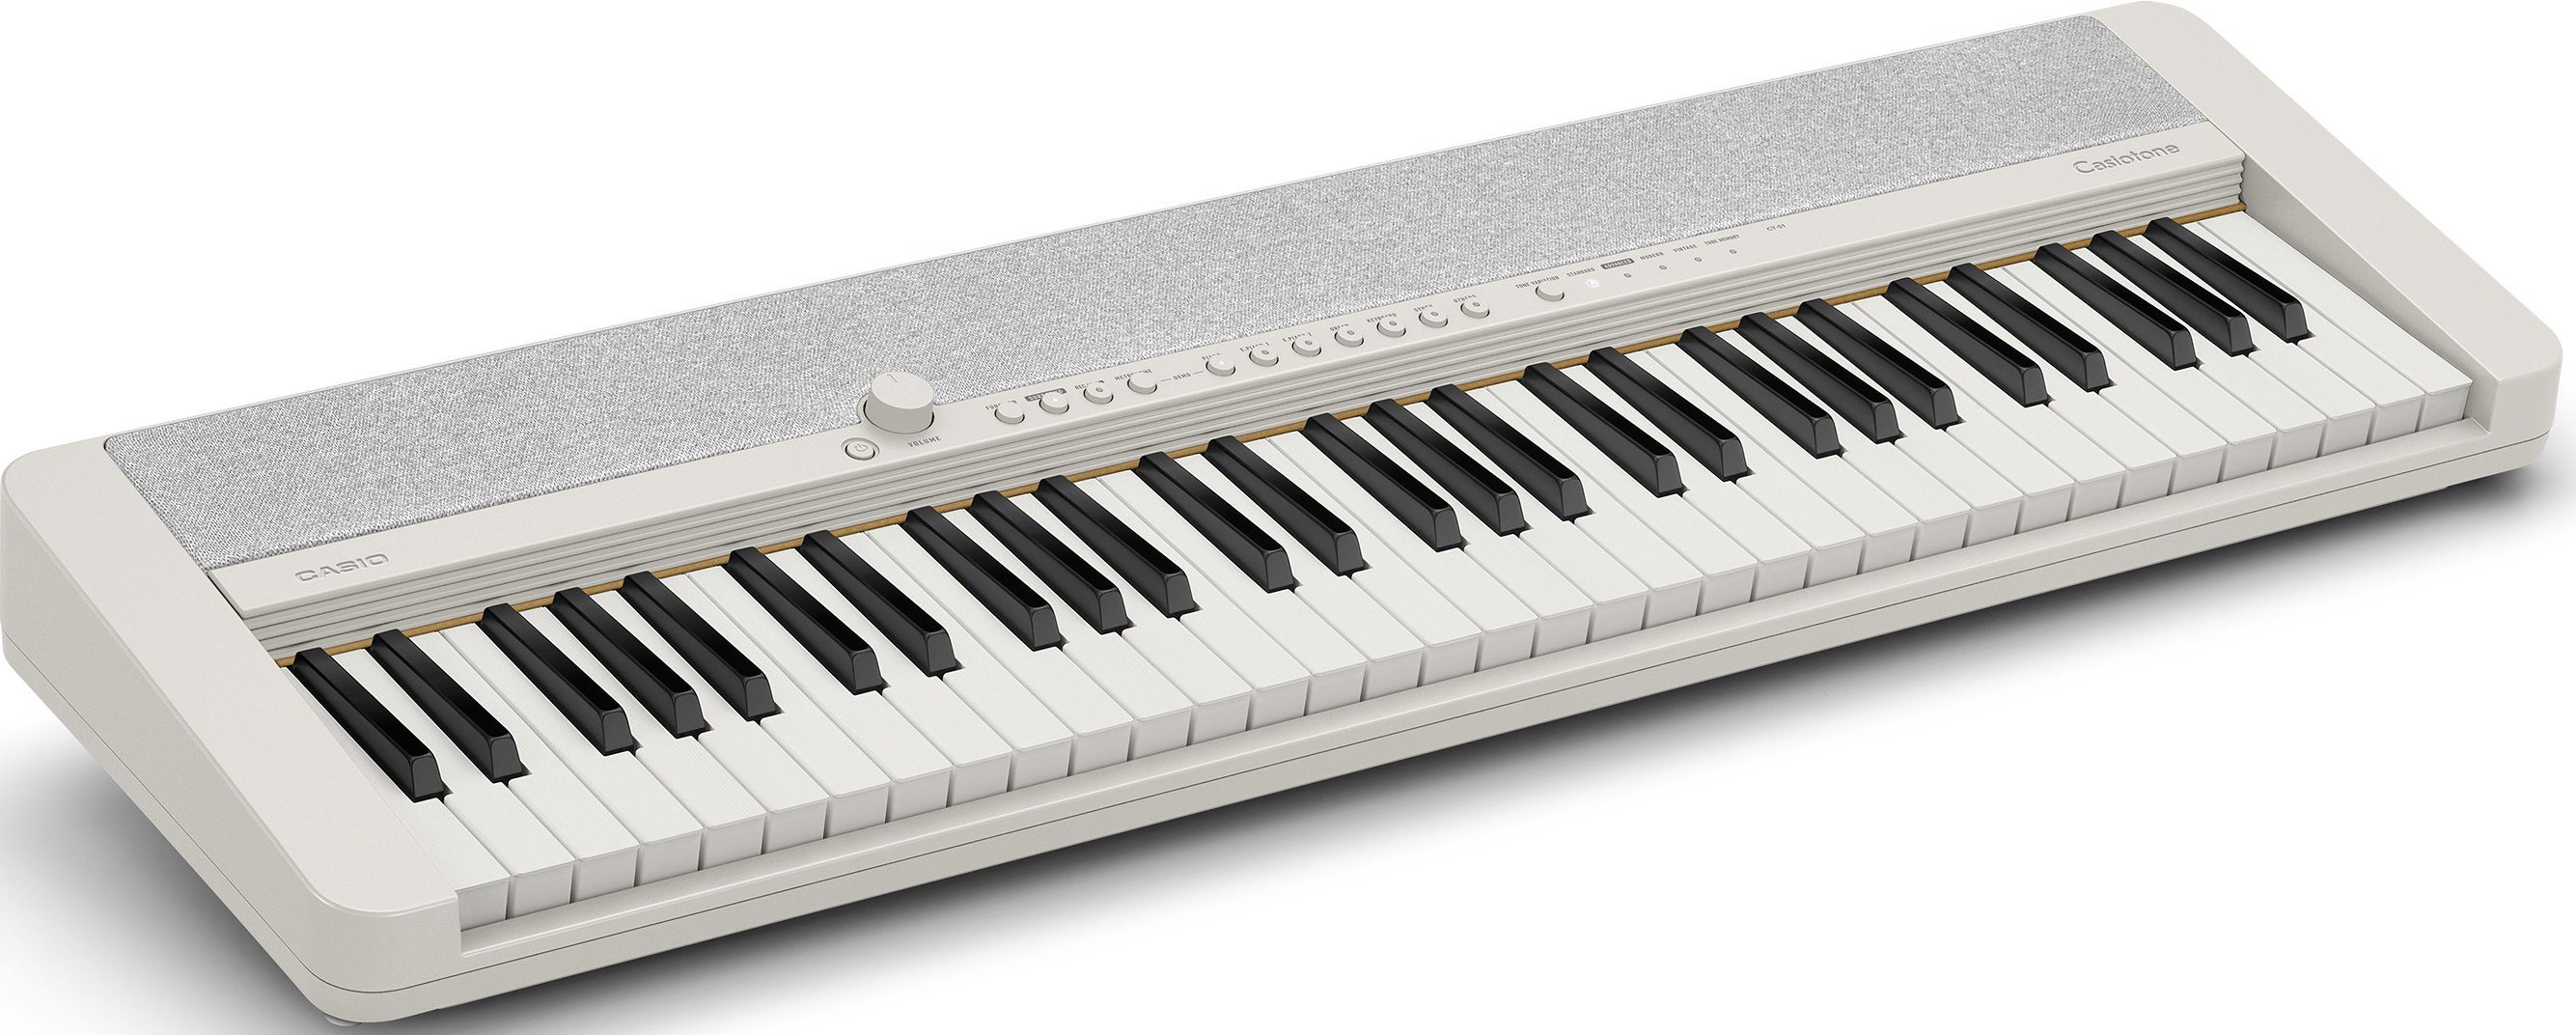 CT-S1WESP, Klanggourmets für Home-Keyboard Piano-Einsteiger CASIO und ideal Piano-Keyboard,